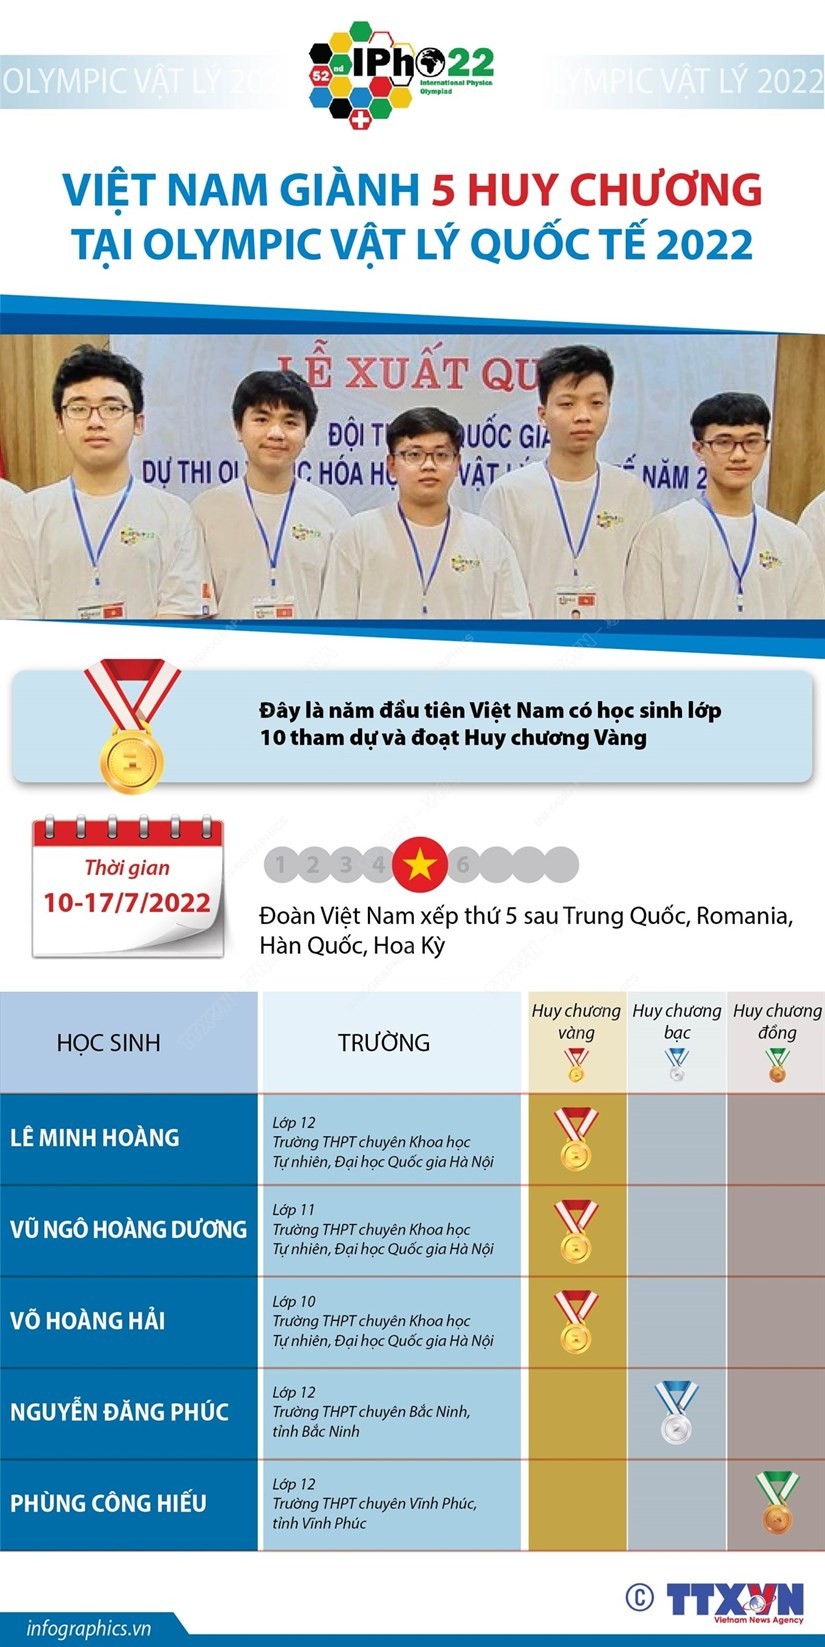 Việt Nam giành 5 huy chương tại Olympic Vật lý quốc tế 2022